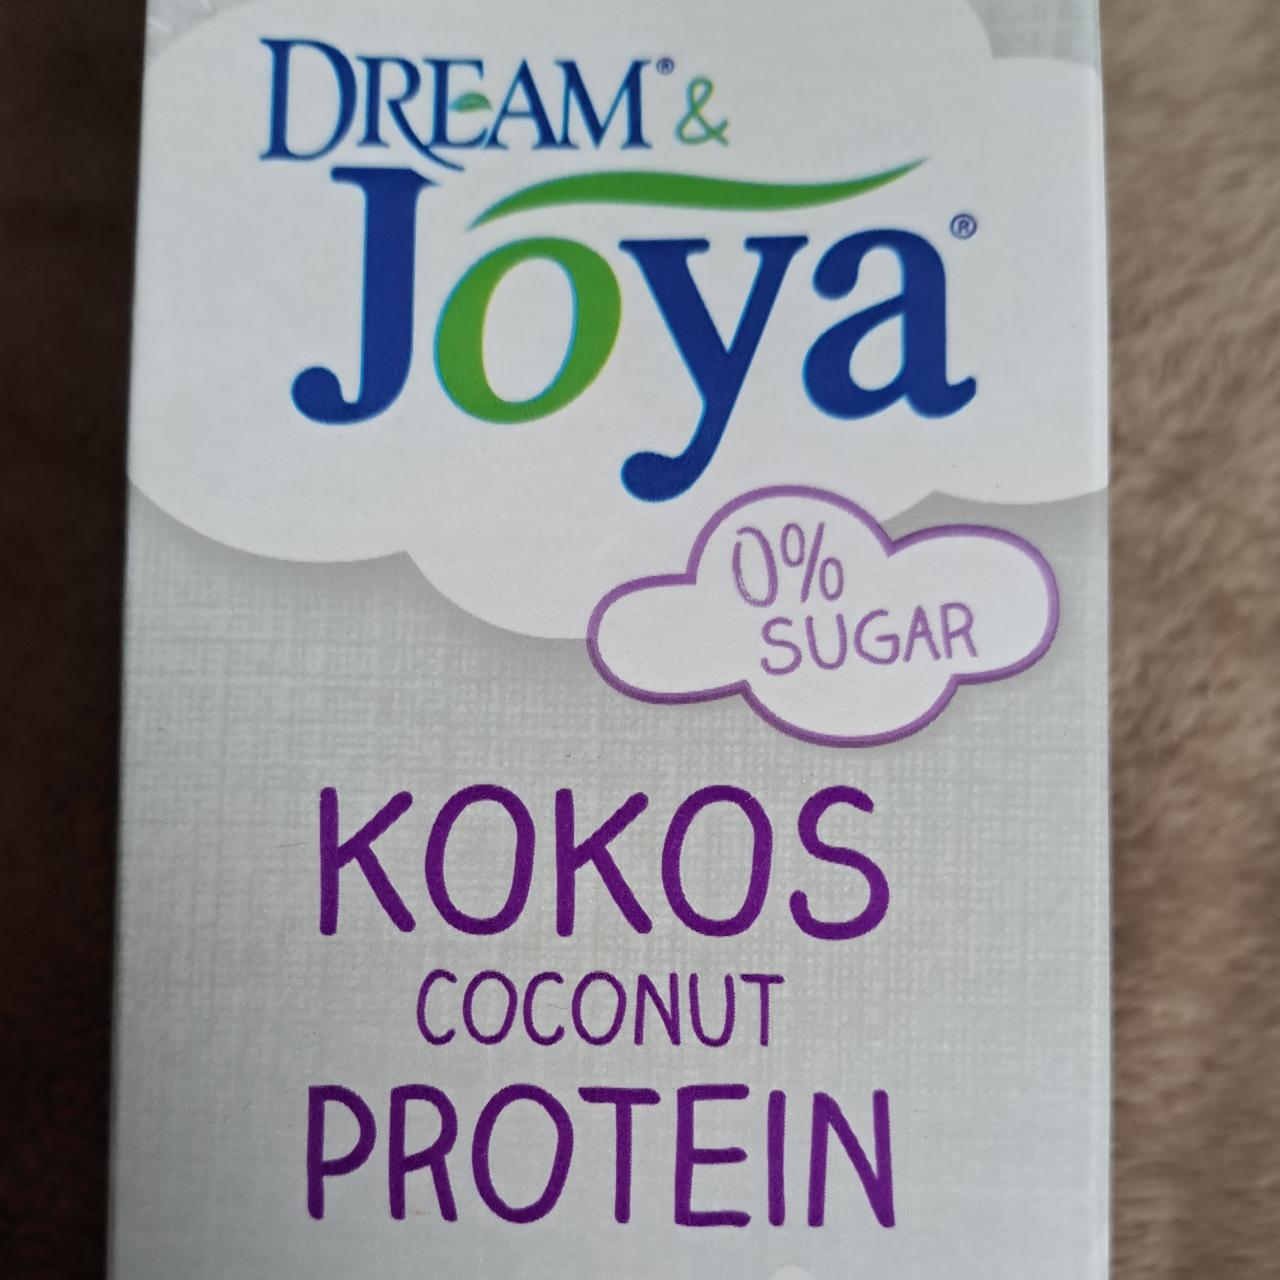 Fotografie - Kokos coconut protein Dream & Joya